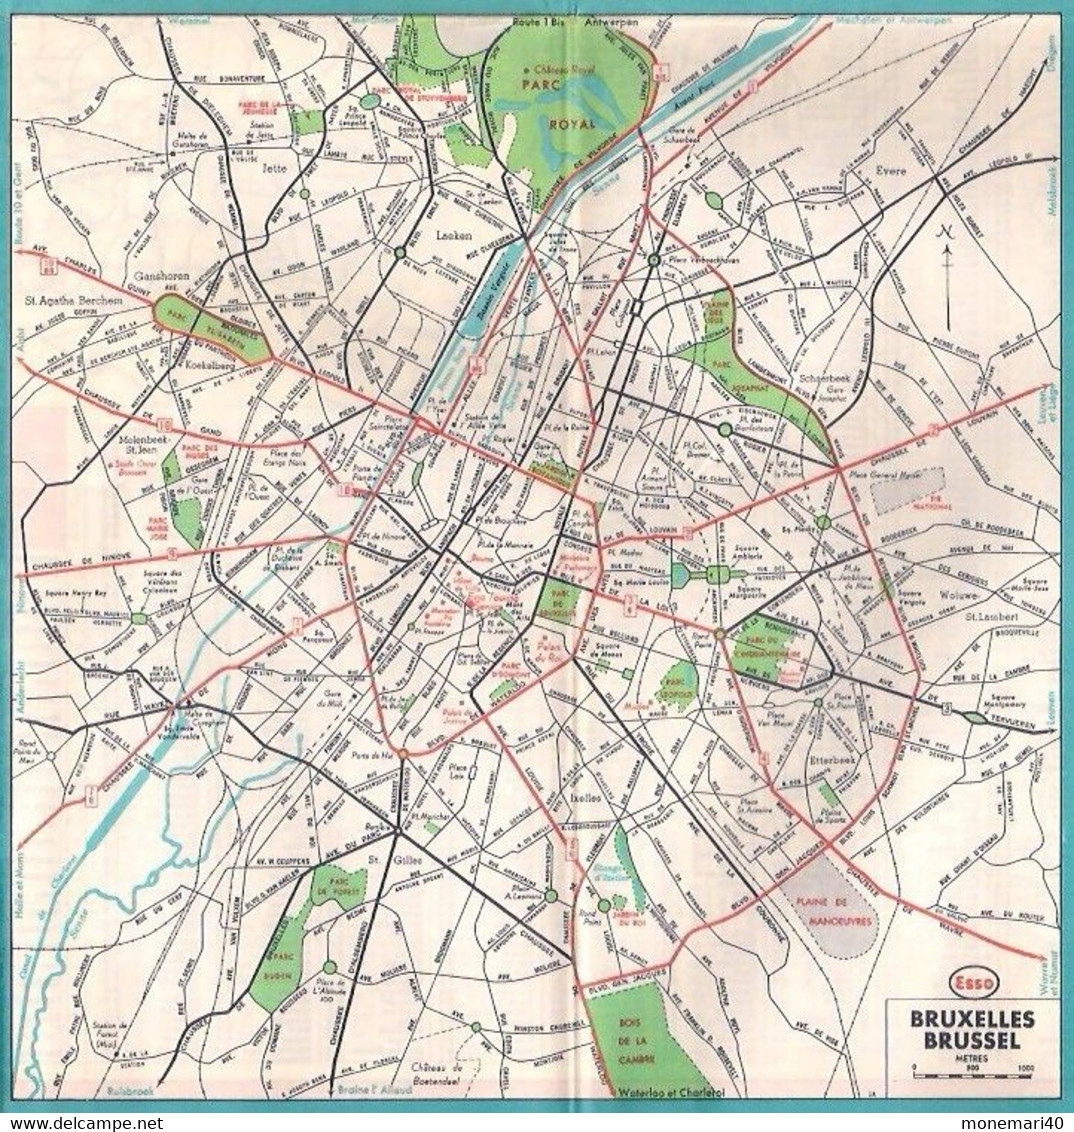 ESSO - CARTE ROUTIÈRE (DOUBLE FACE) BELGIQUE et LUXEMBOURG - ÉCHELLE 1:420.000 (1961)